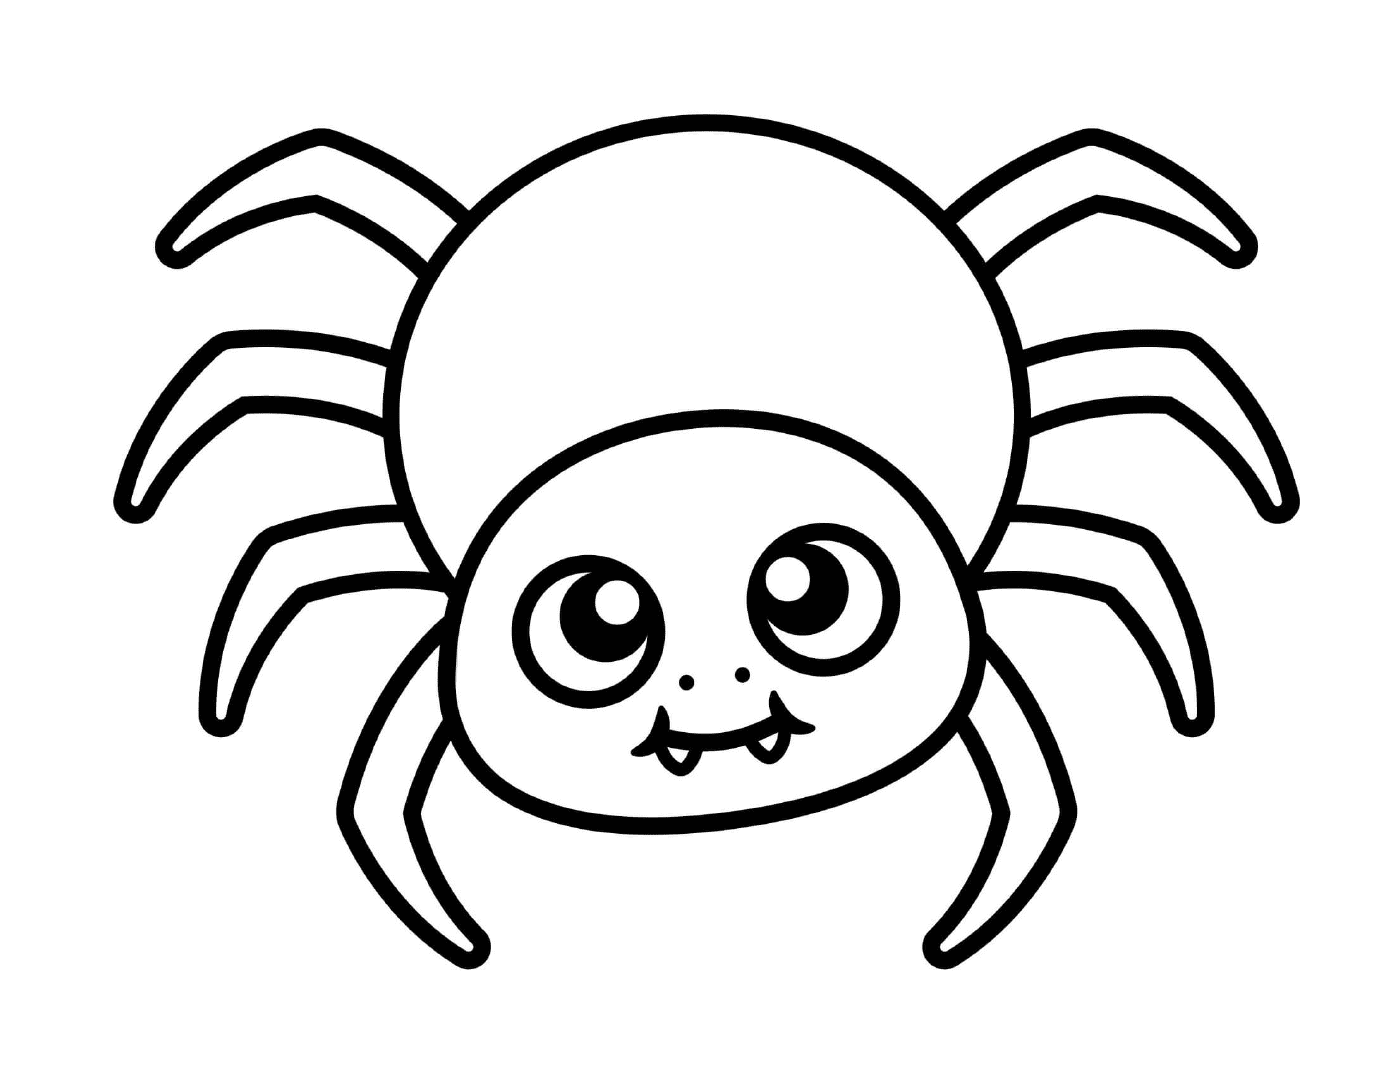  一个可爱的、方便儿童的蜘蛛 